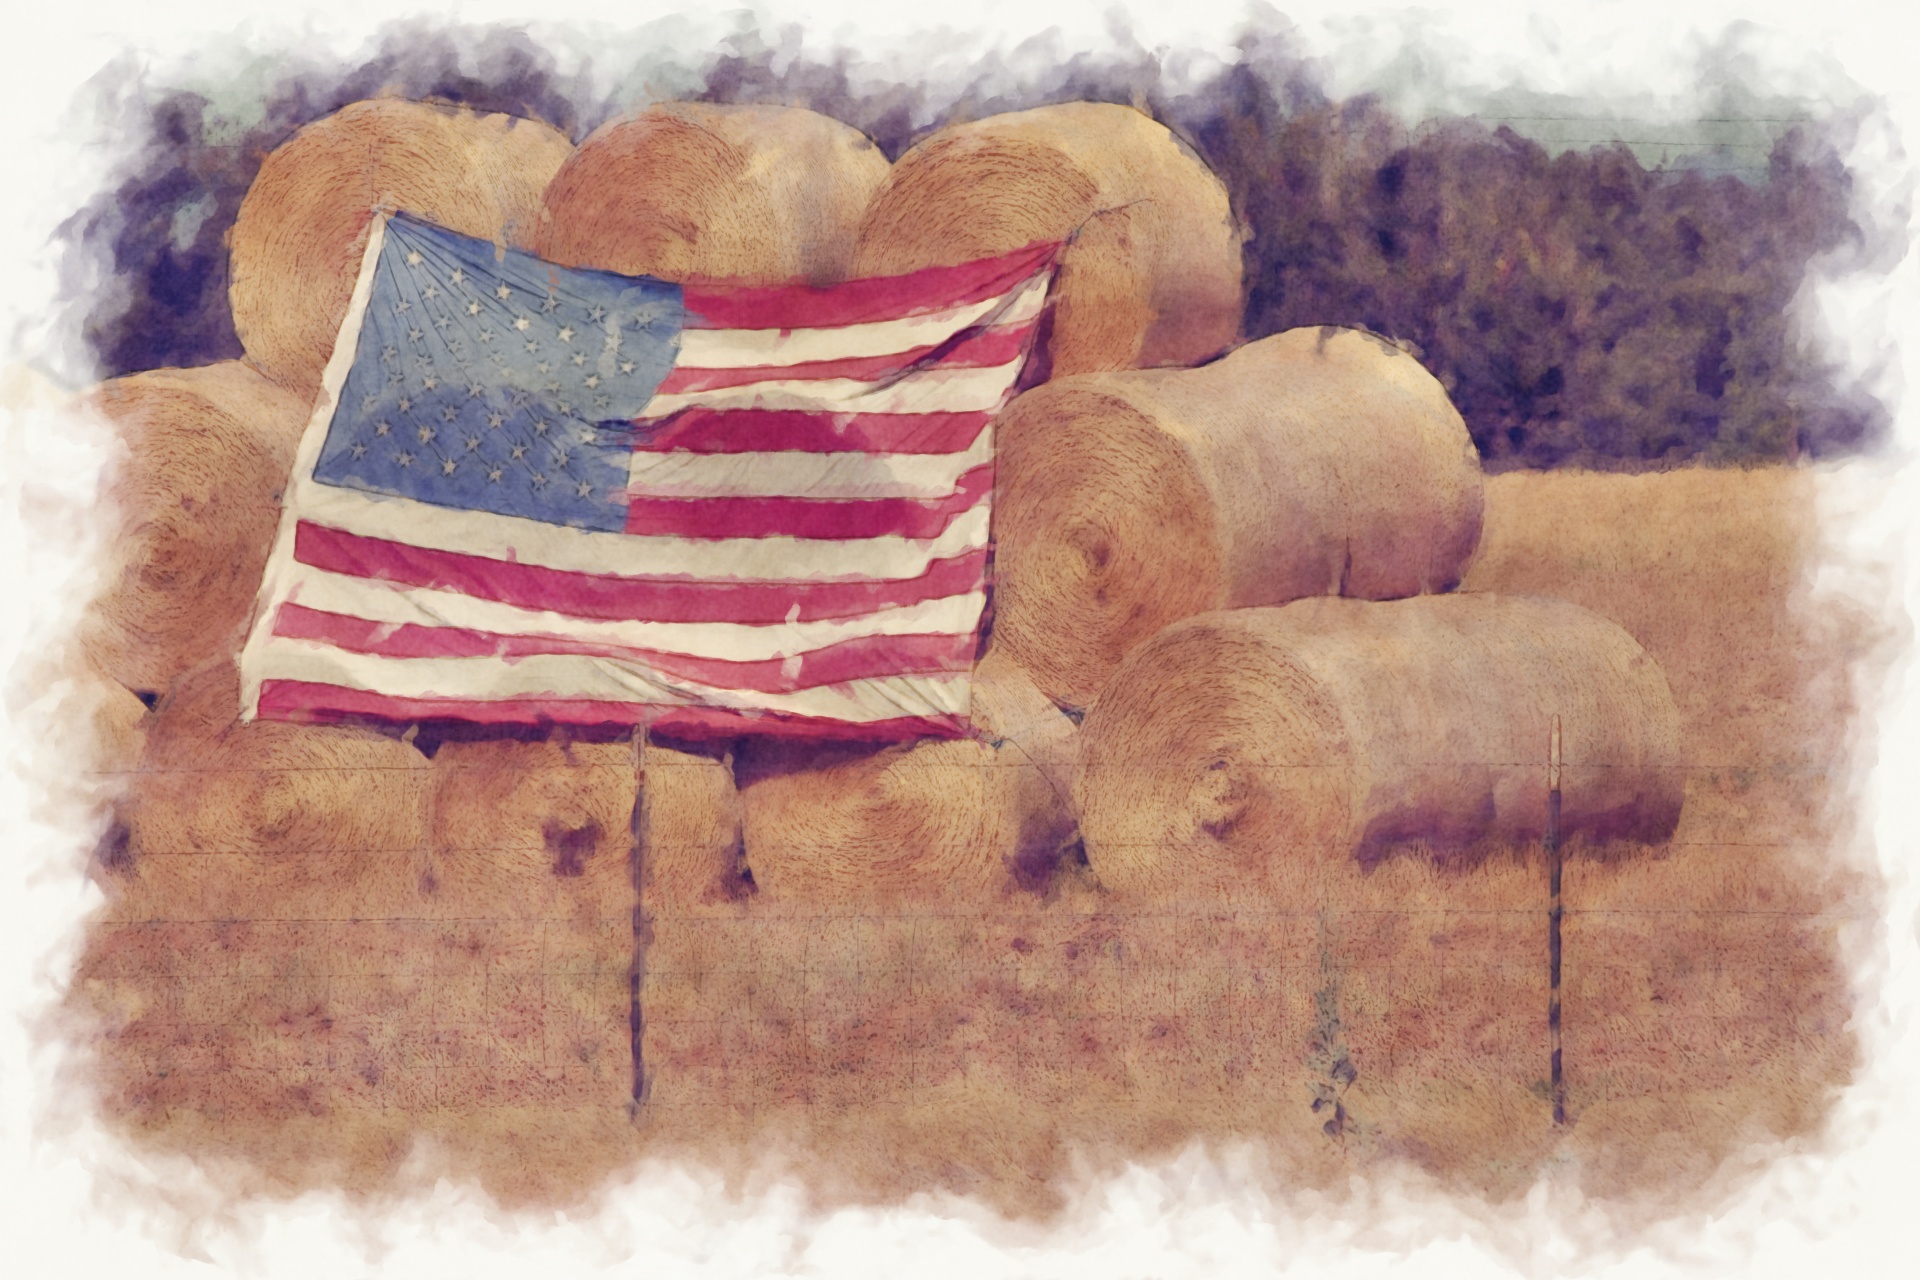 Americká vlajka na balíky sena